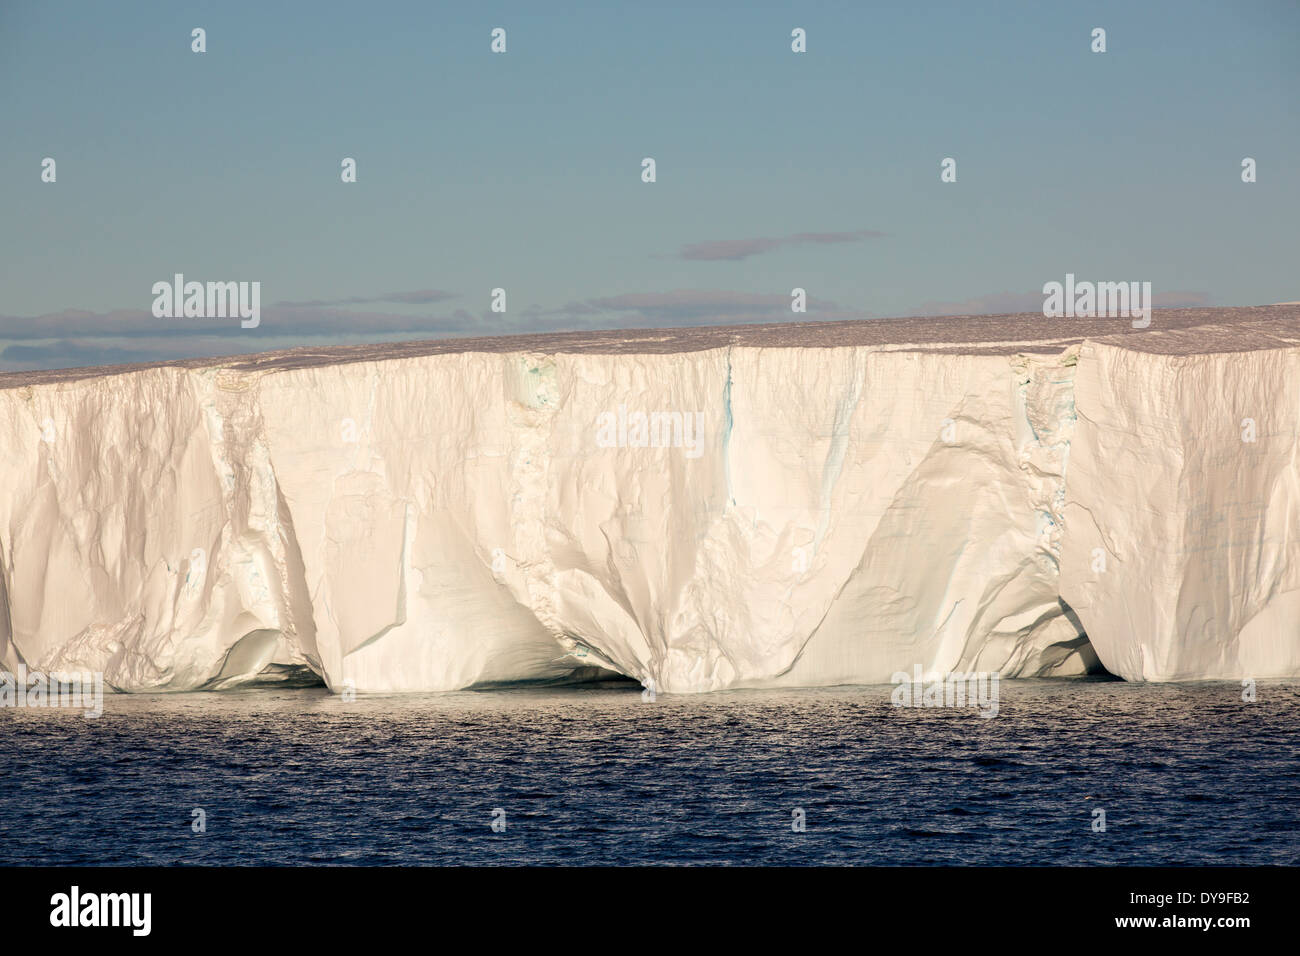 Eine tabellarische Eisberg Livoinstone Insel auf der antarktischen Halbinsel. Die Halbinsel ist eines der am schnellsten Erwärmung Orte Stockfoto